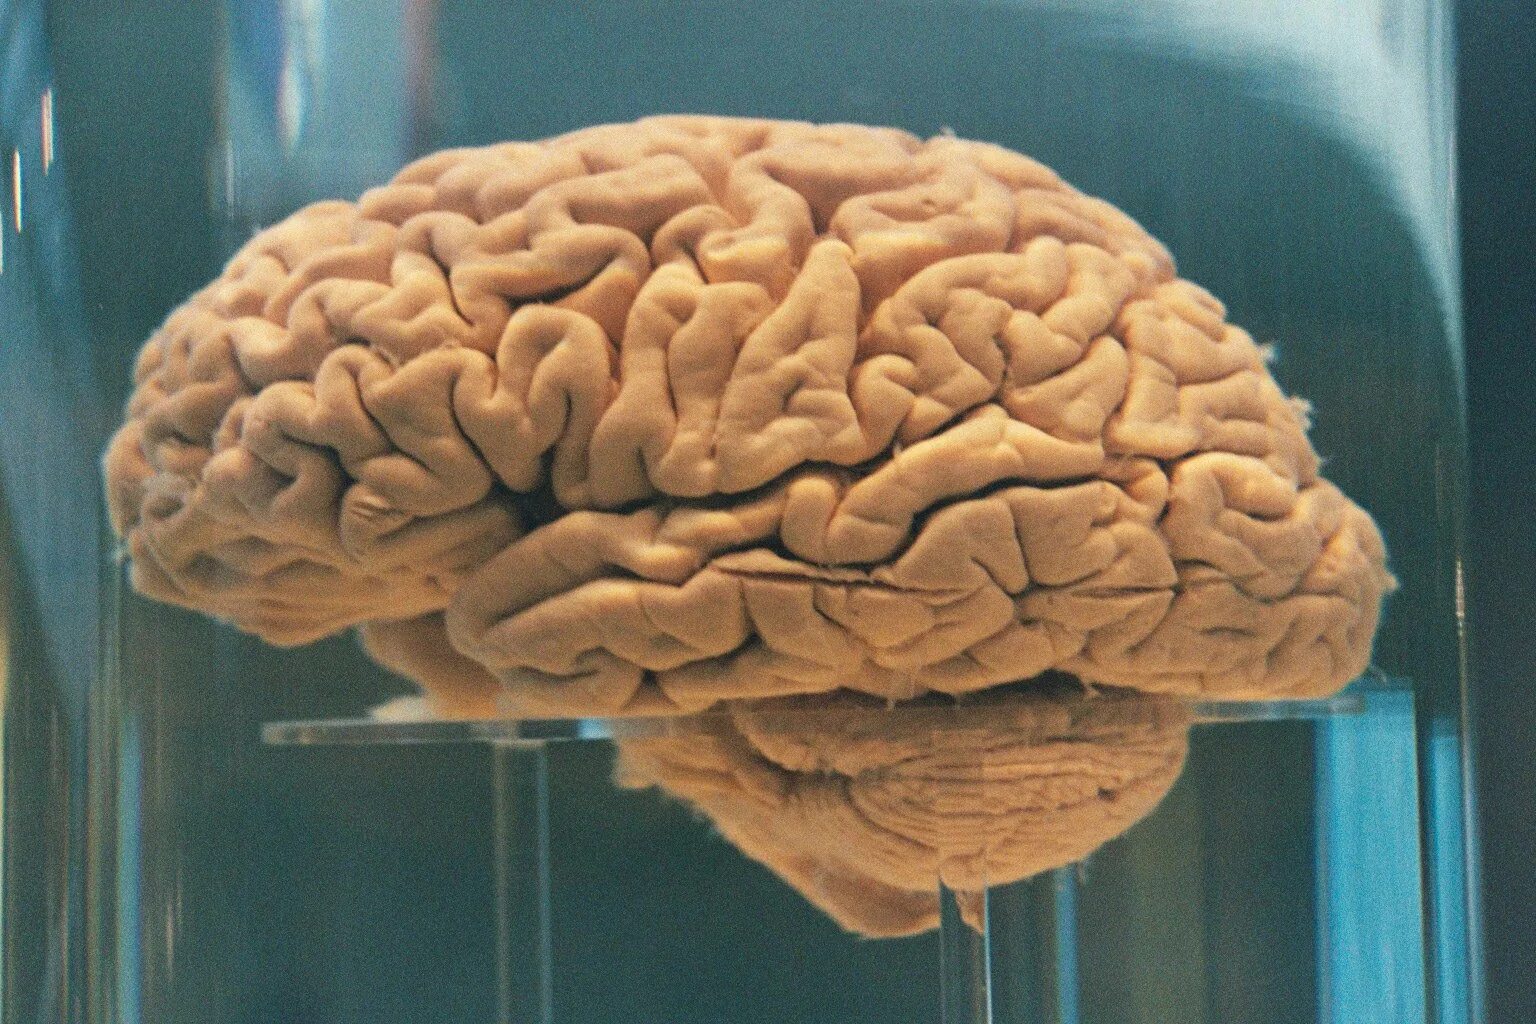 Последний мозг. Головной мозг настоящий.